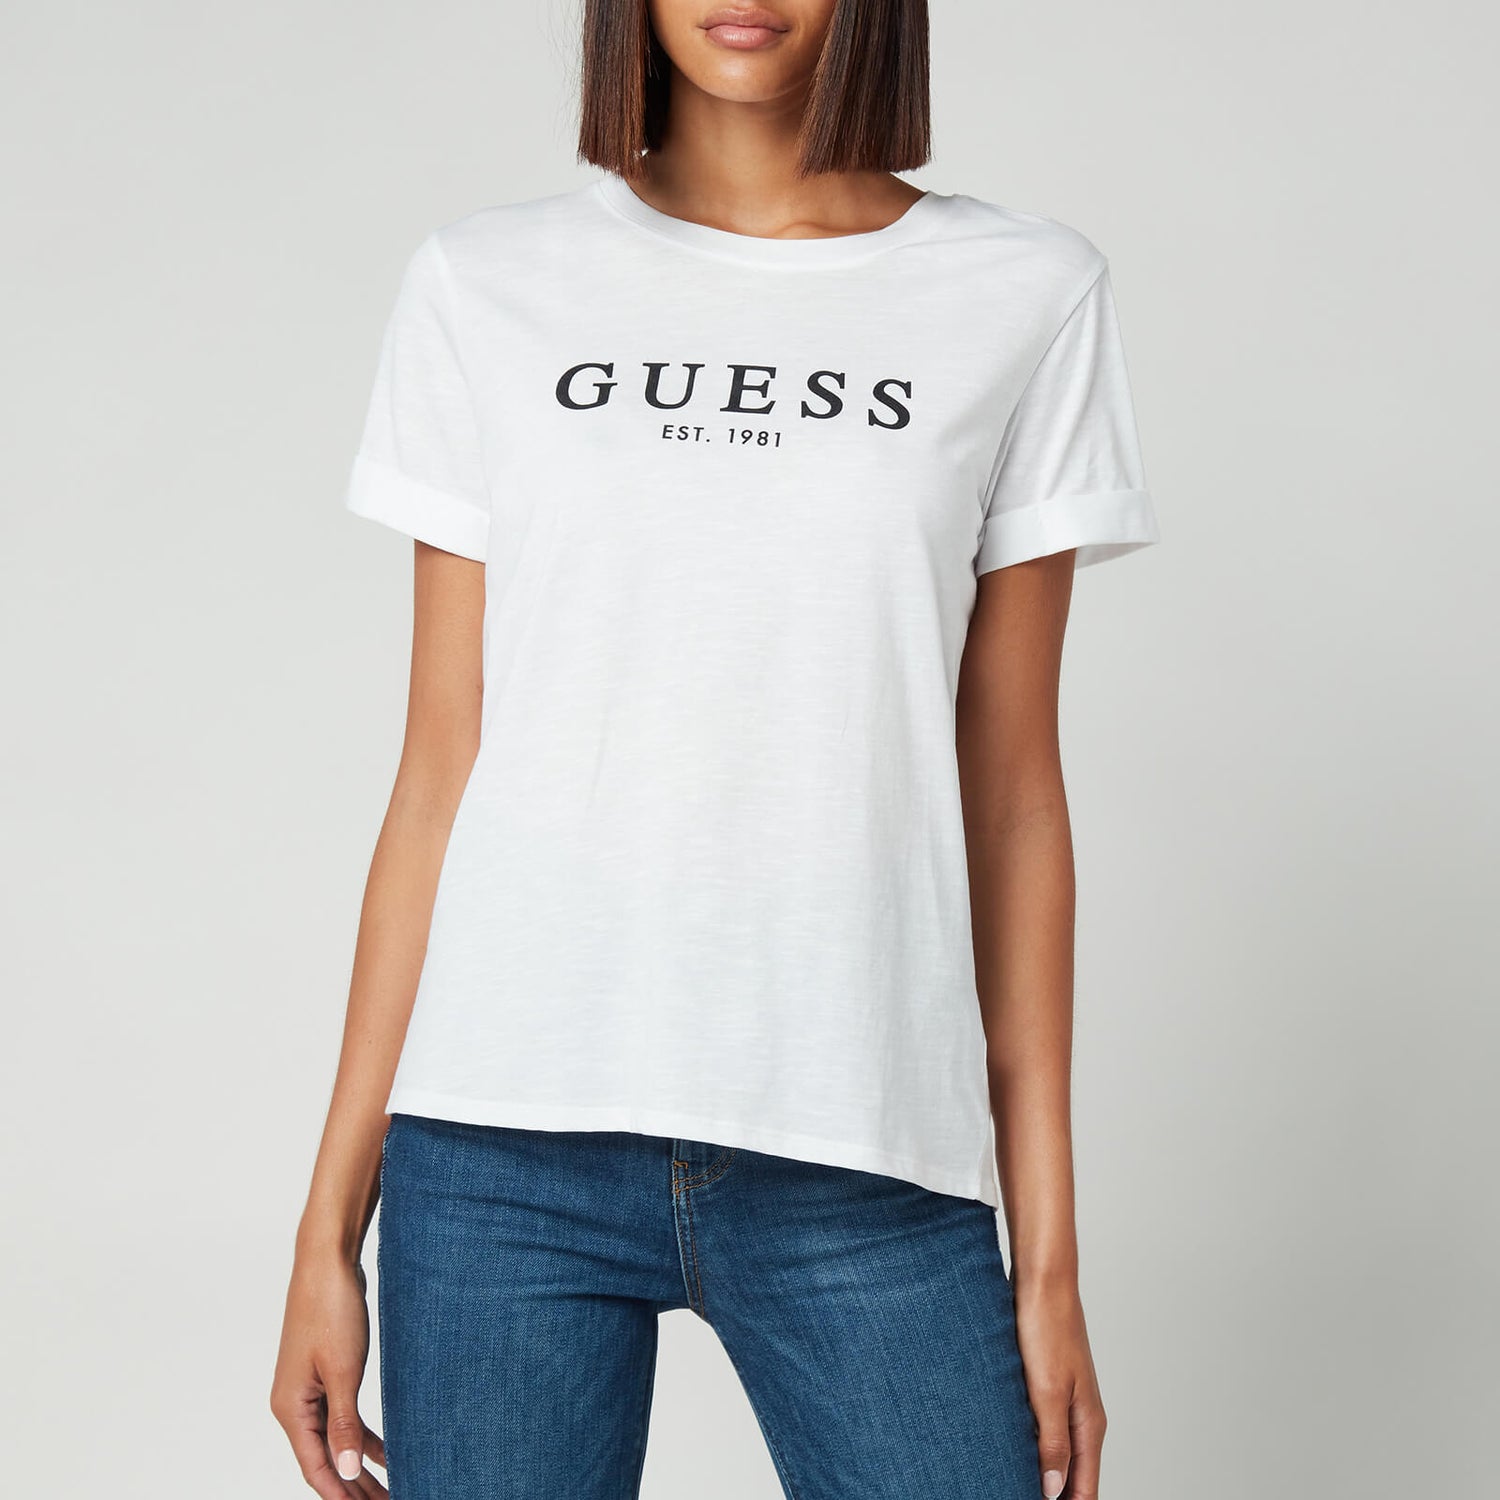 Guess Women's 1981 Roll Cuff Logo T-Shirt - Pure White - XS